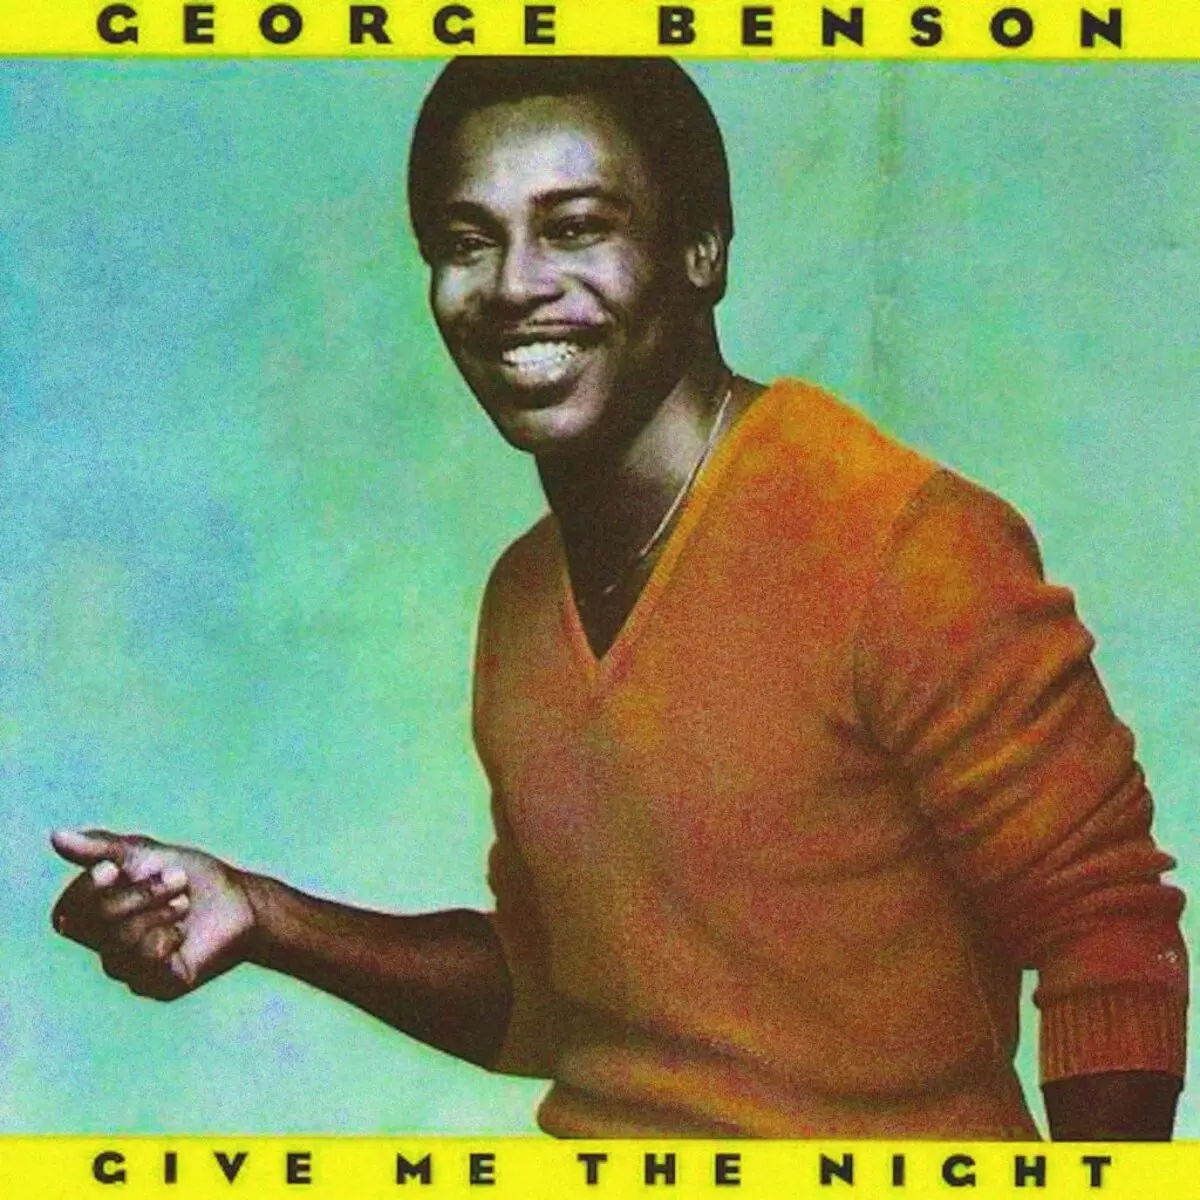 Dê-me a noite (1980) - George Benson - Tudo sobre o álbum ...